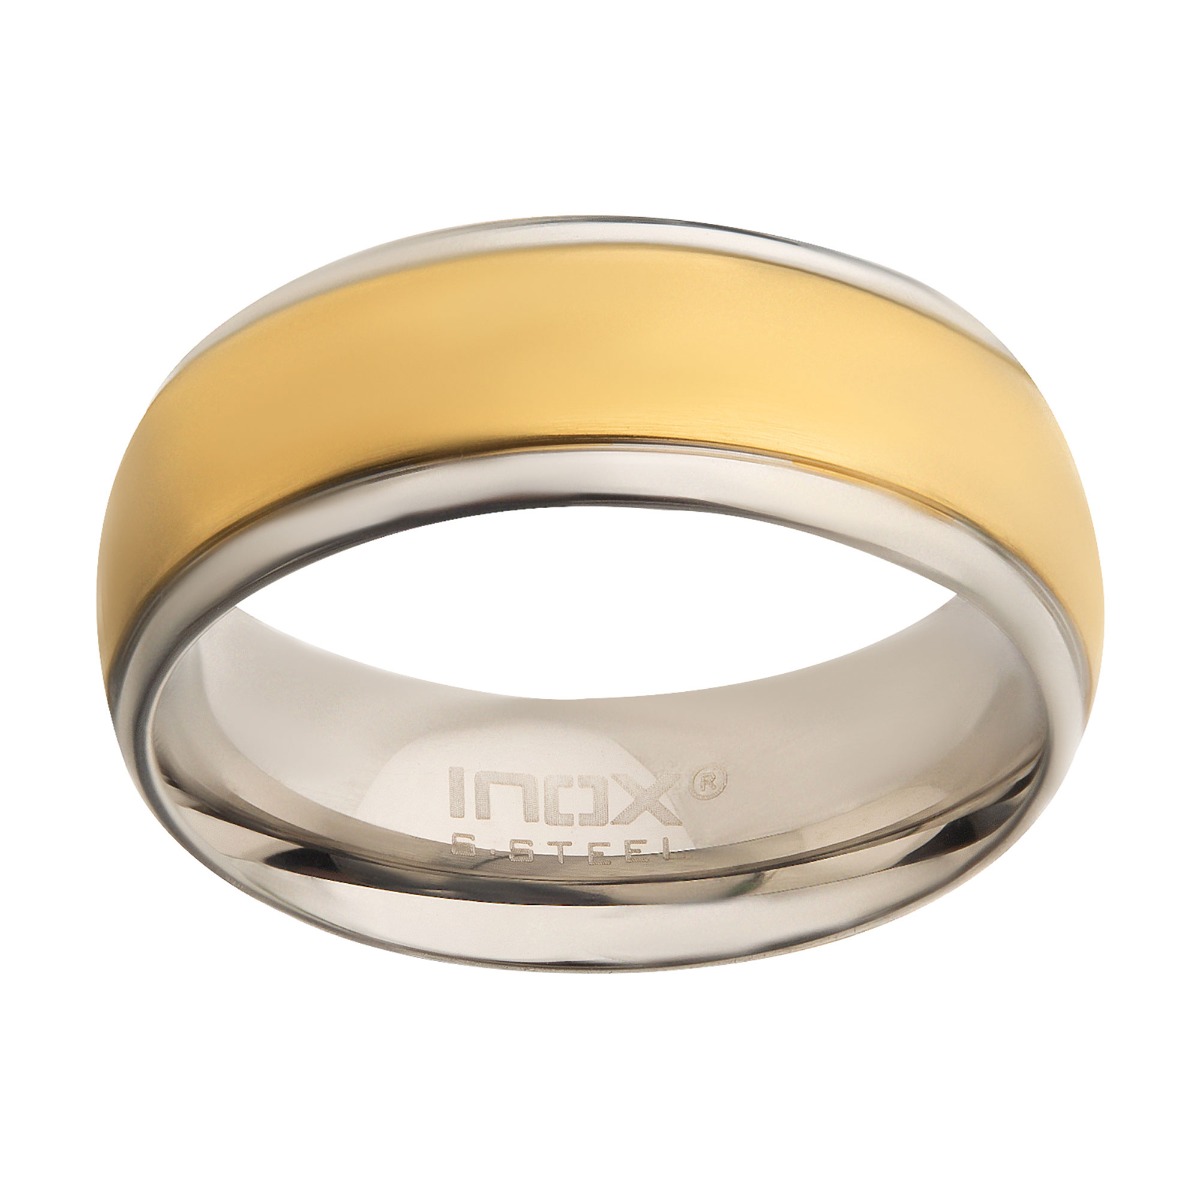 Steel & Gold Plated Patterned Design Ring Image 2 Ken Walker Jewelers Gig Harbor, WA